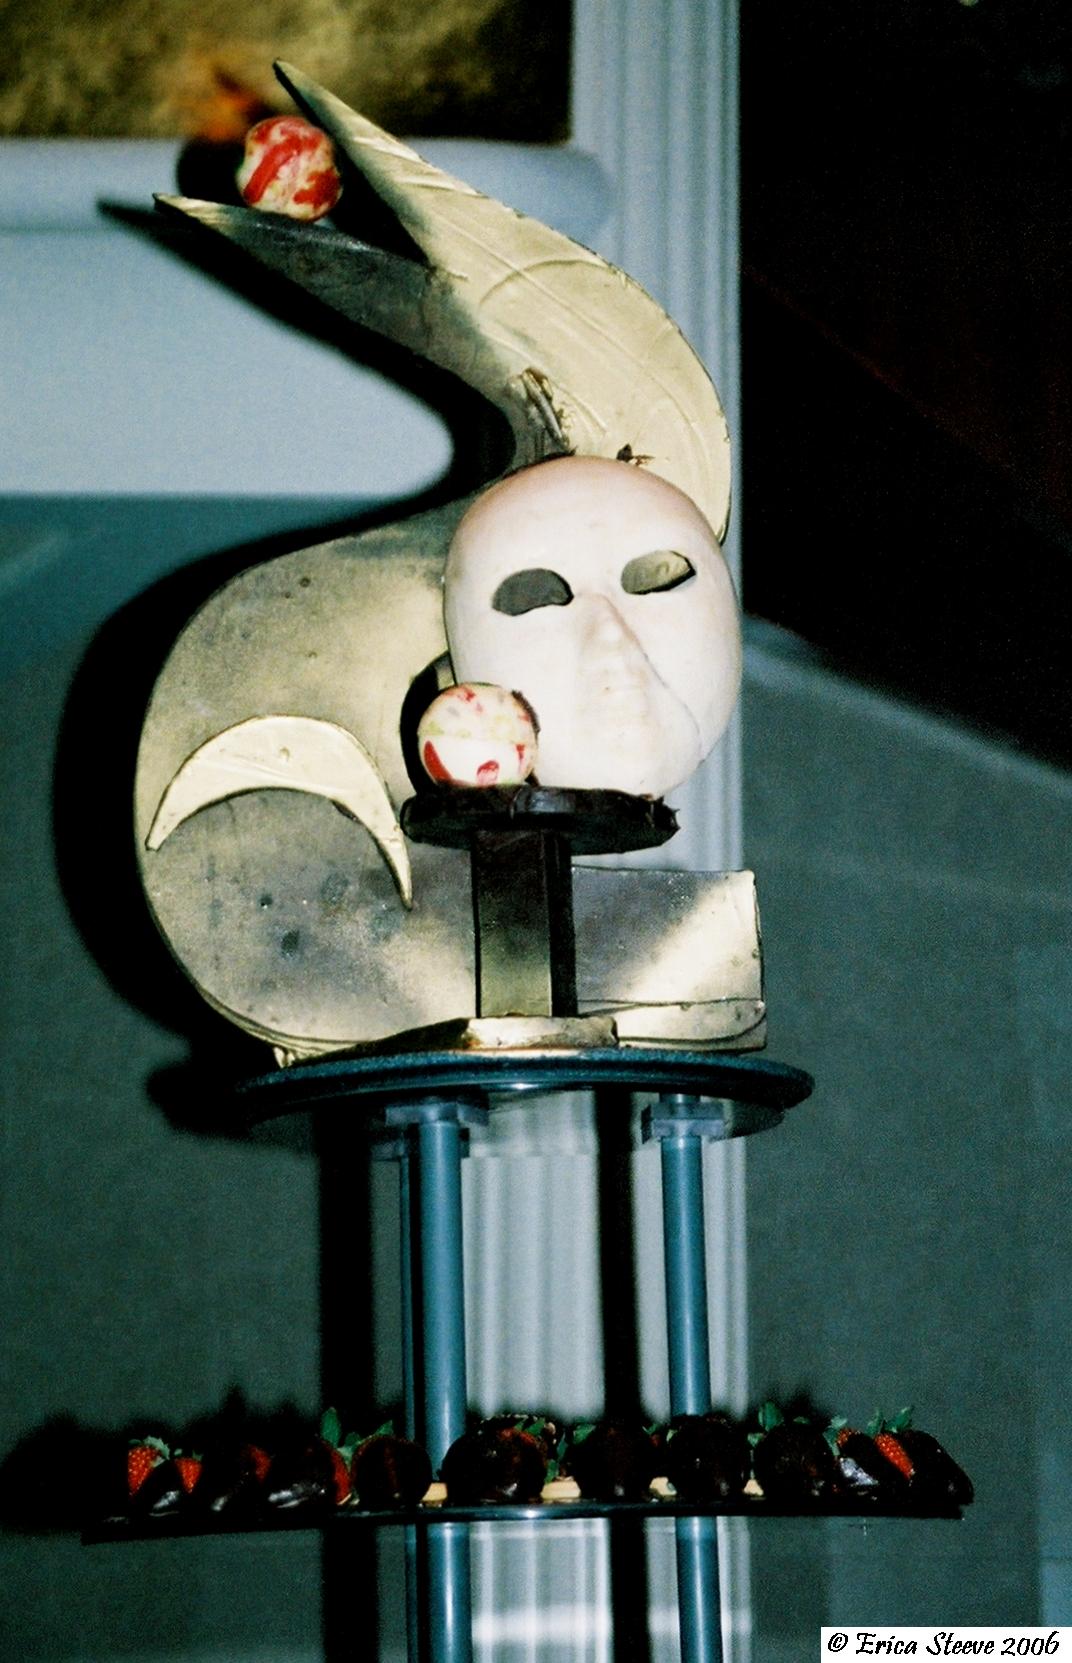 Closeup of chocolate bird and mask